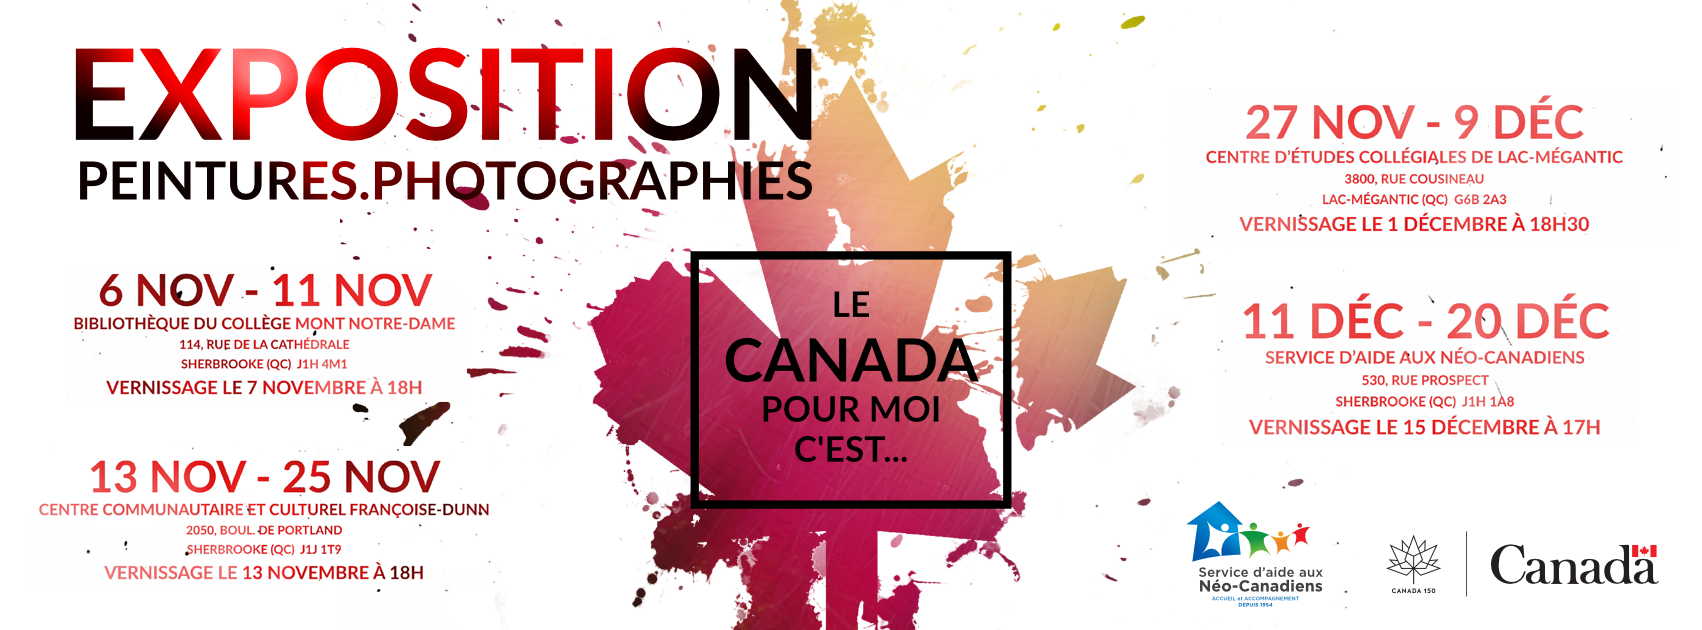 Group Exhibition: Le Canada cest pou moi ... Part Two